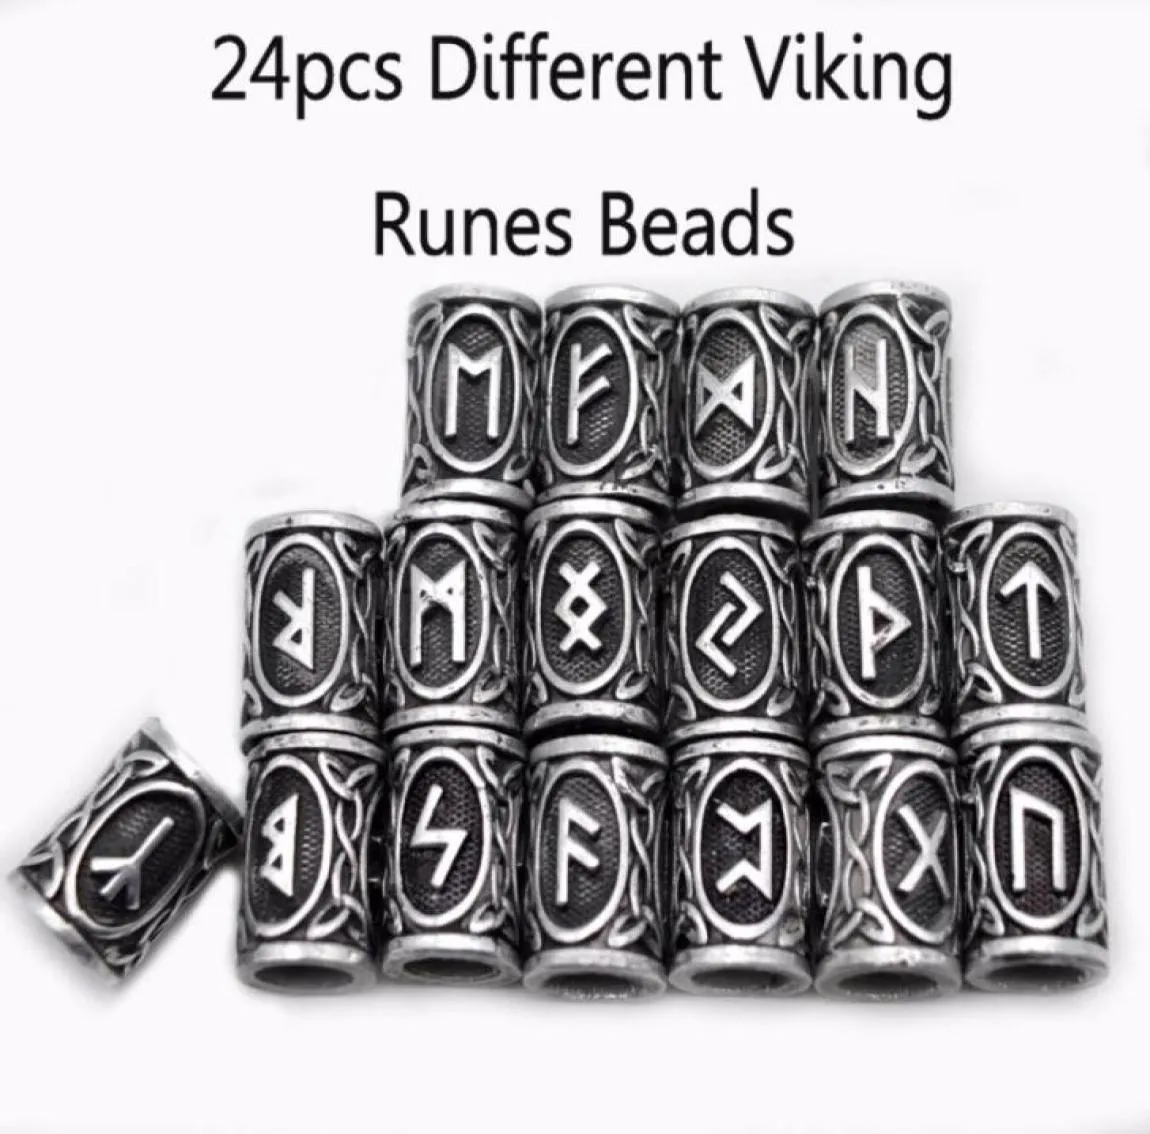 24 -stop Top Silver Noorse Viking Runen Charms Beads Bevindingen voor armbanden voor hangkettingbaard of haar Vikings rune kits6911921